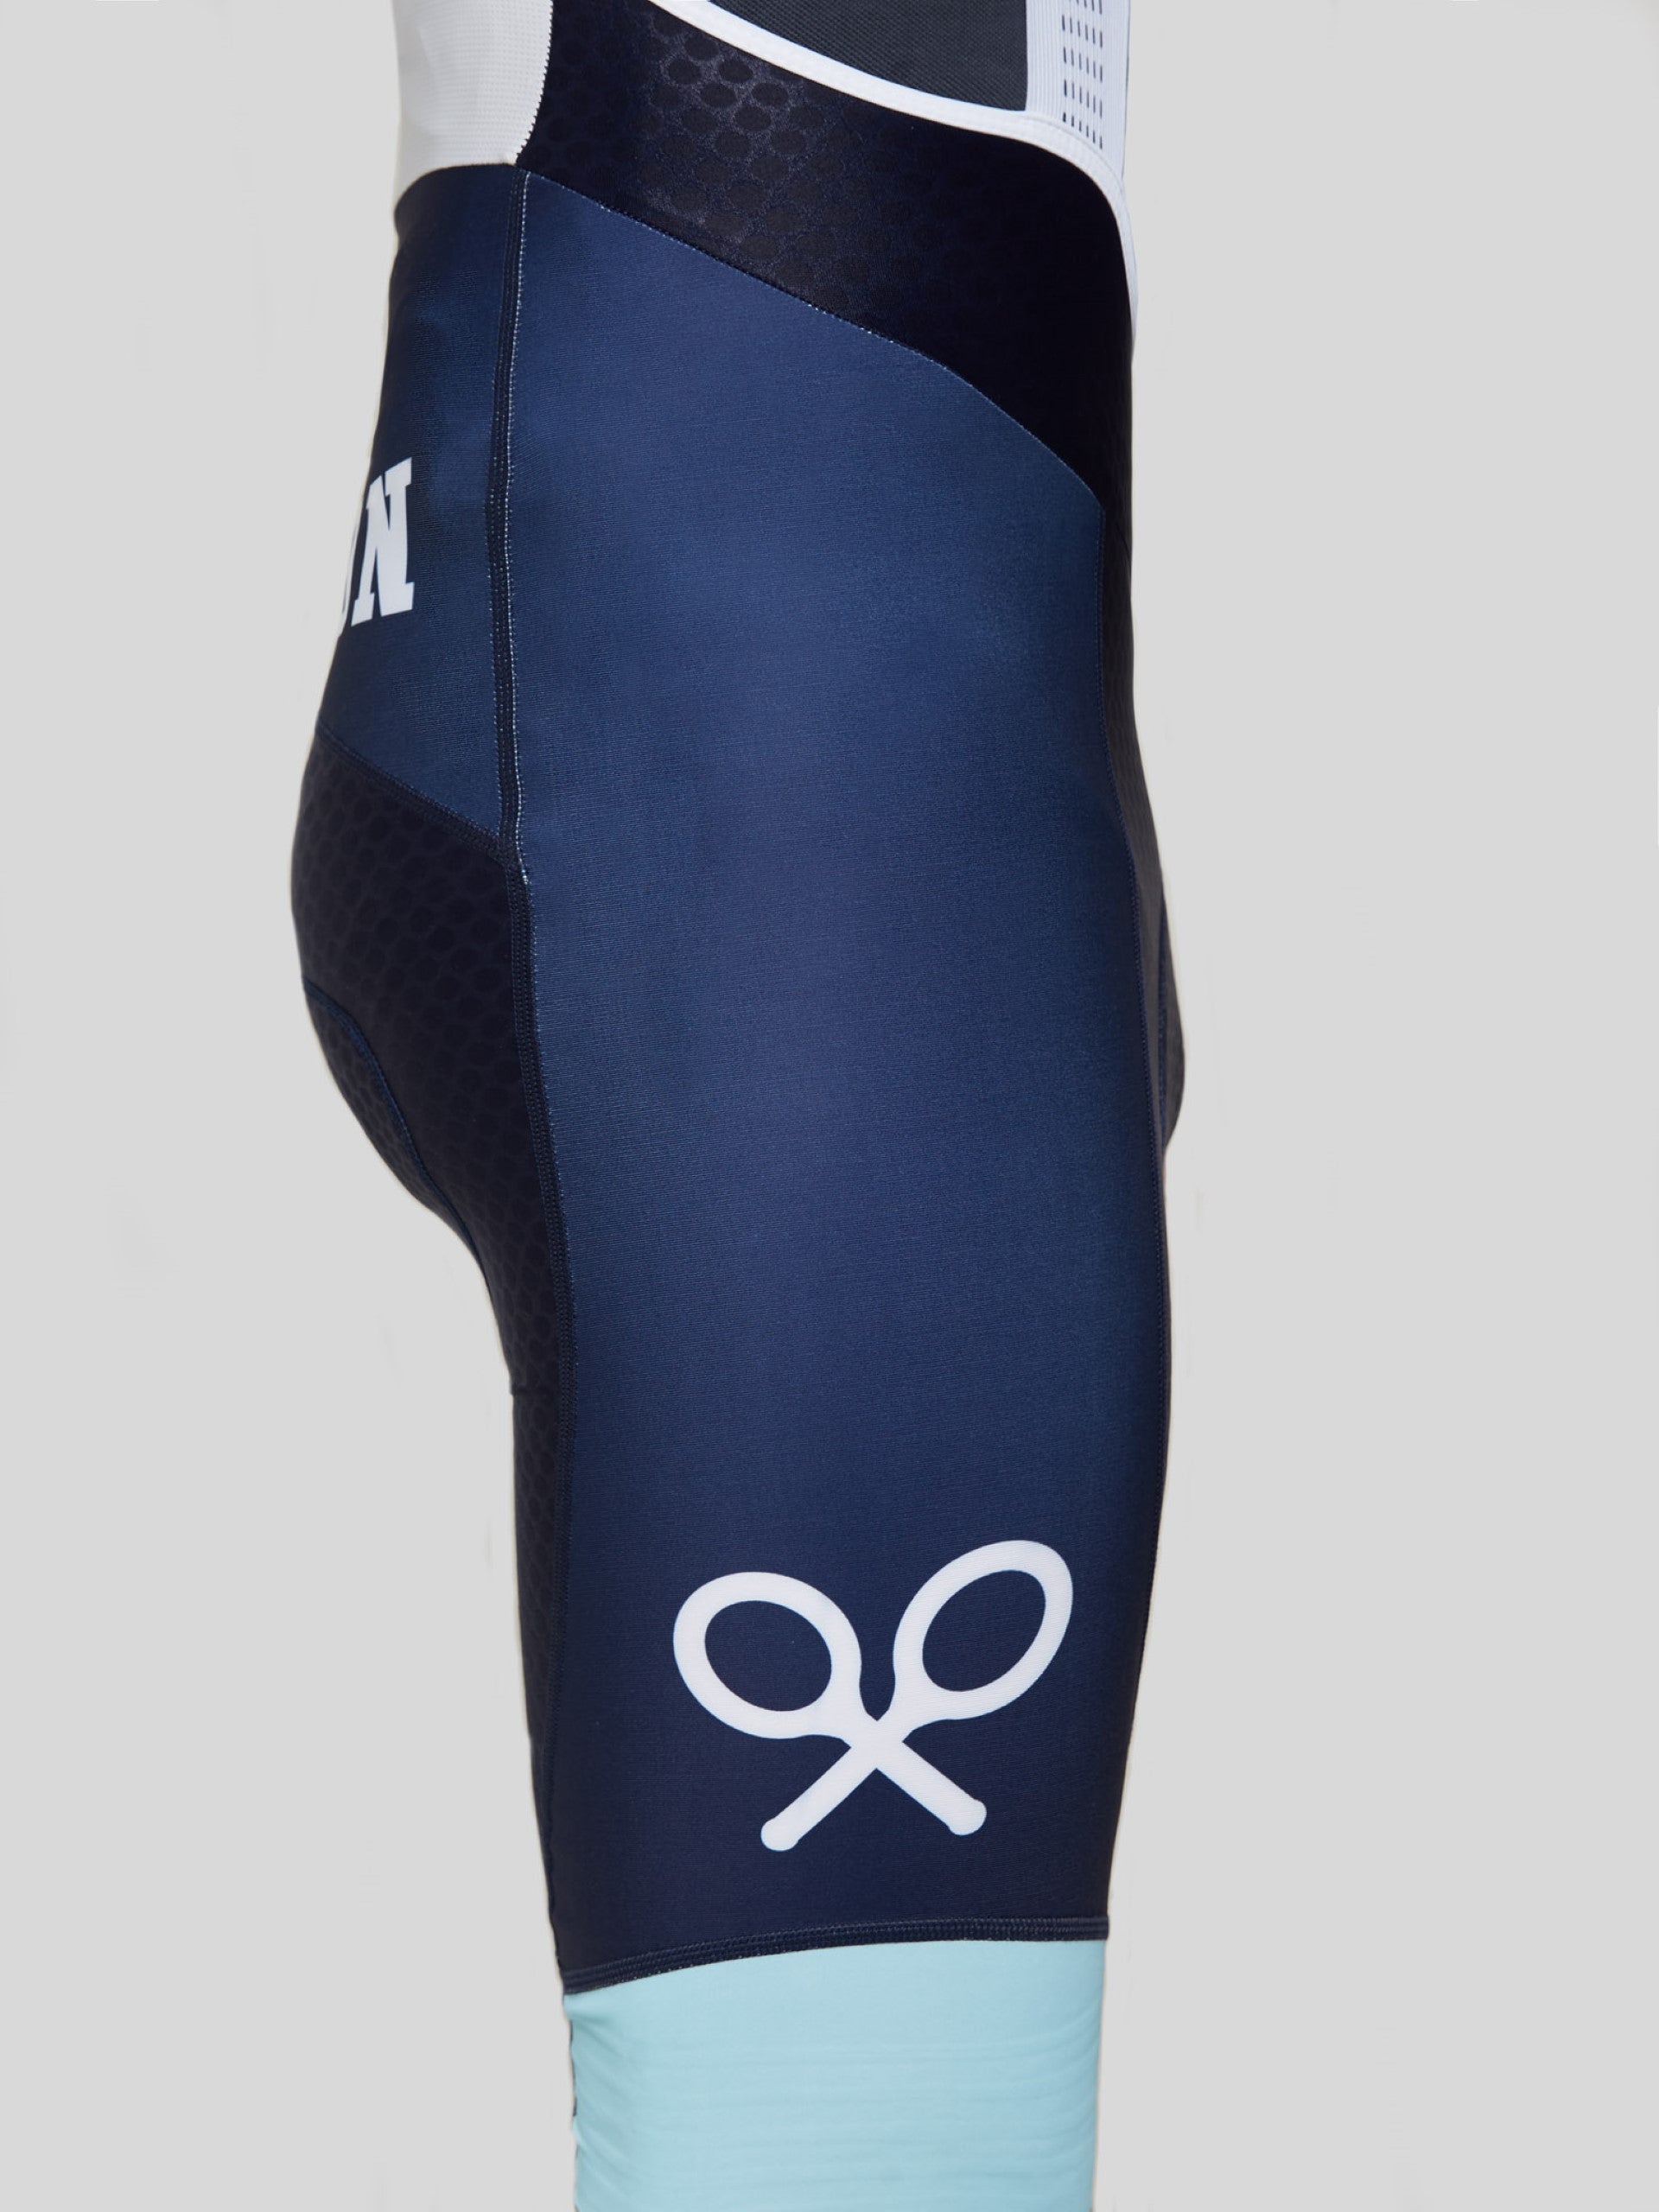 Silbon navy blue cycling shorts